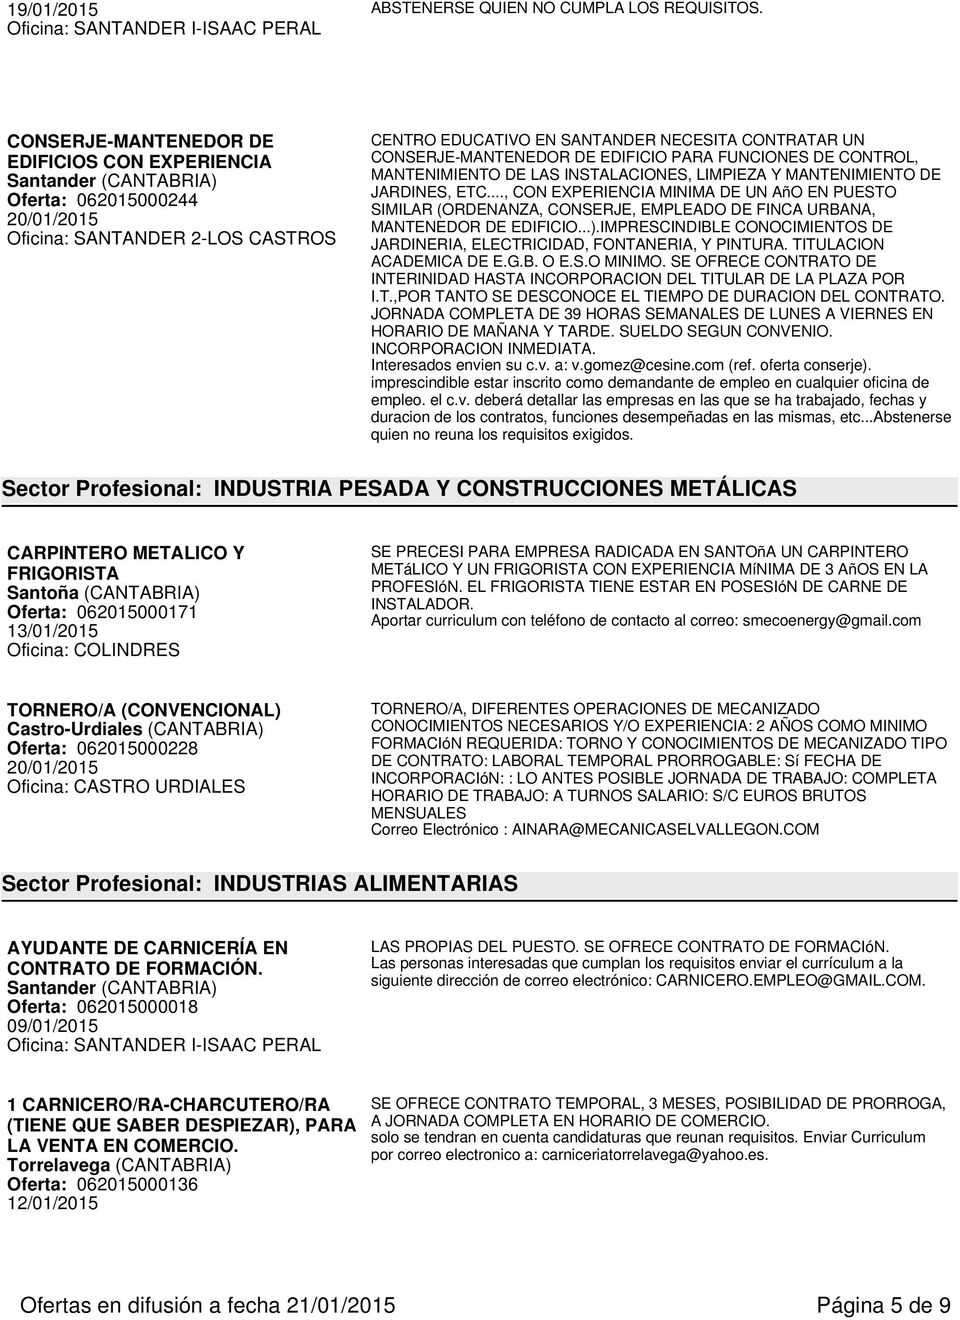 FUNCIONES DE CONTROL, MANTENIMIENTO DE LAS INSTALACIONES, LIMPIEZA Y MANTENIMIENTO DE JARDINES, ETC.